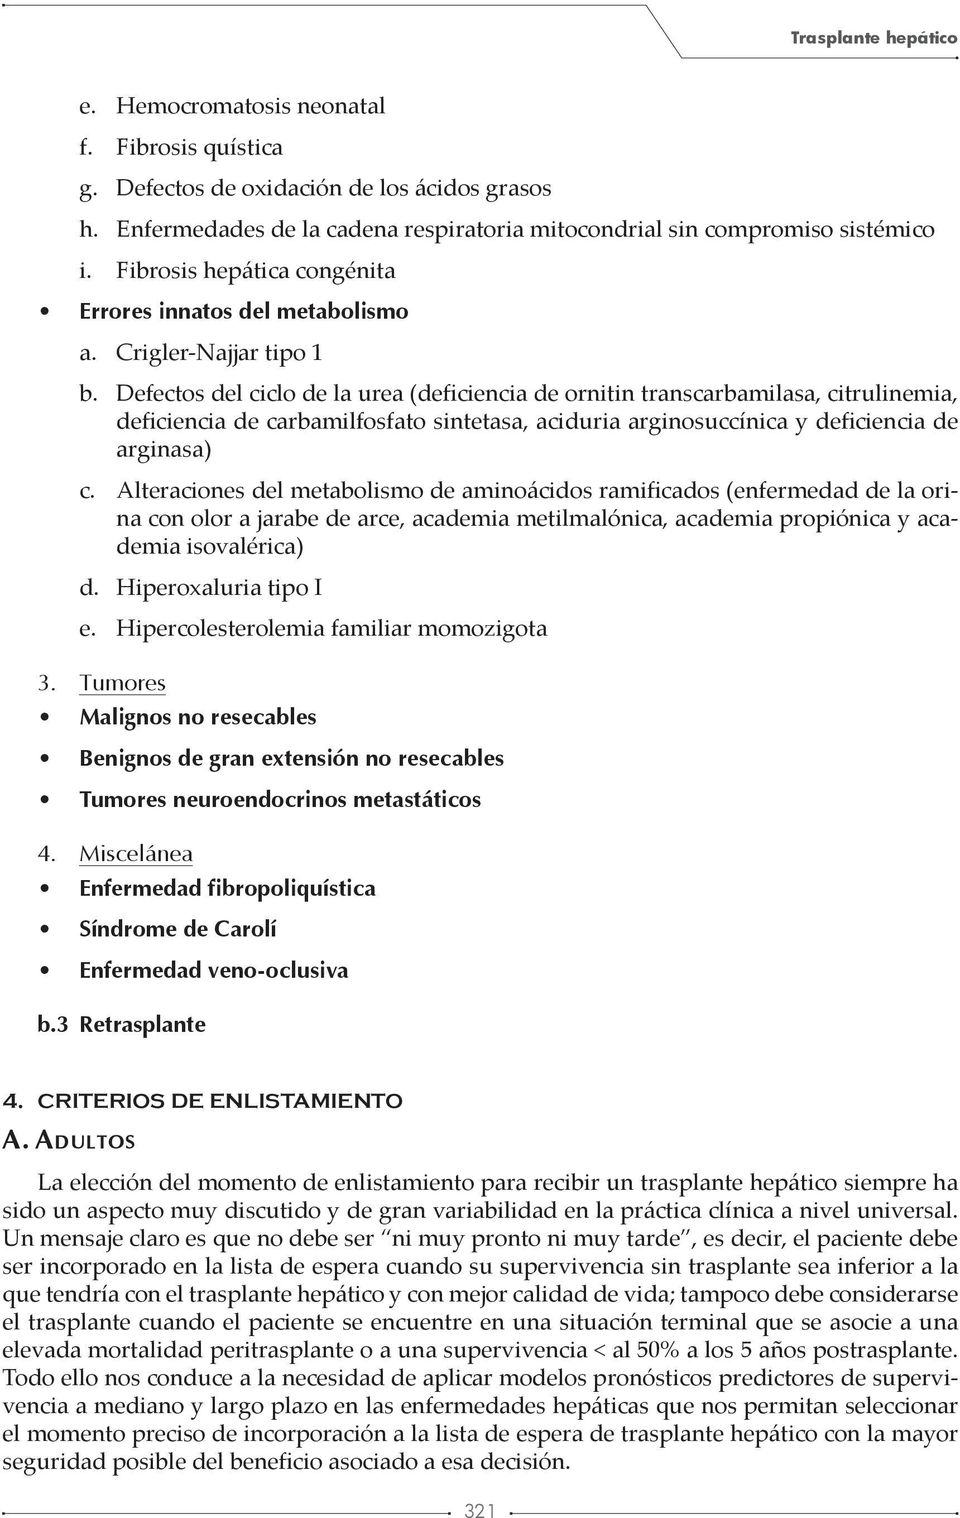 Defectos del ciclo de la urea (deficiencia de ornitin transcarbamilasa, citrulinemia, deficiencia de carbamilfosfato sintetasa, aciduria arginosuccínica y deficiencia de arginasa) c.